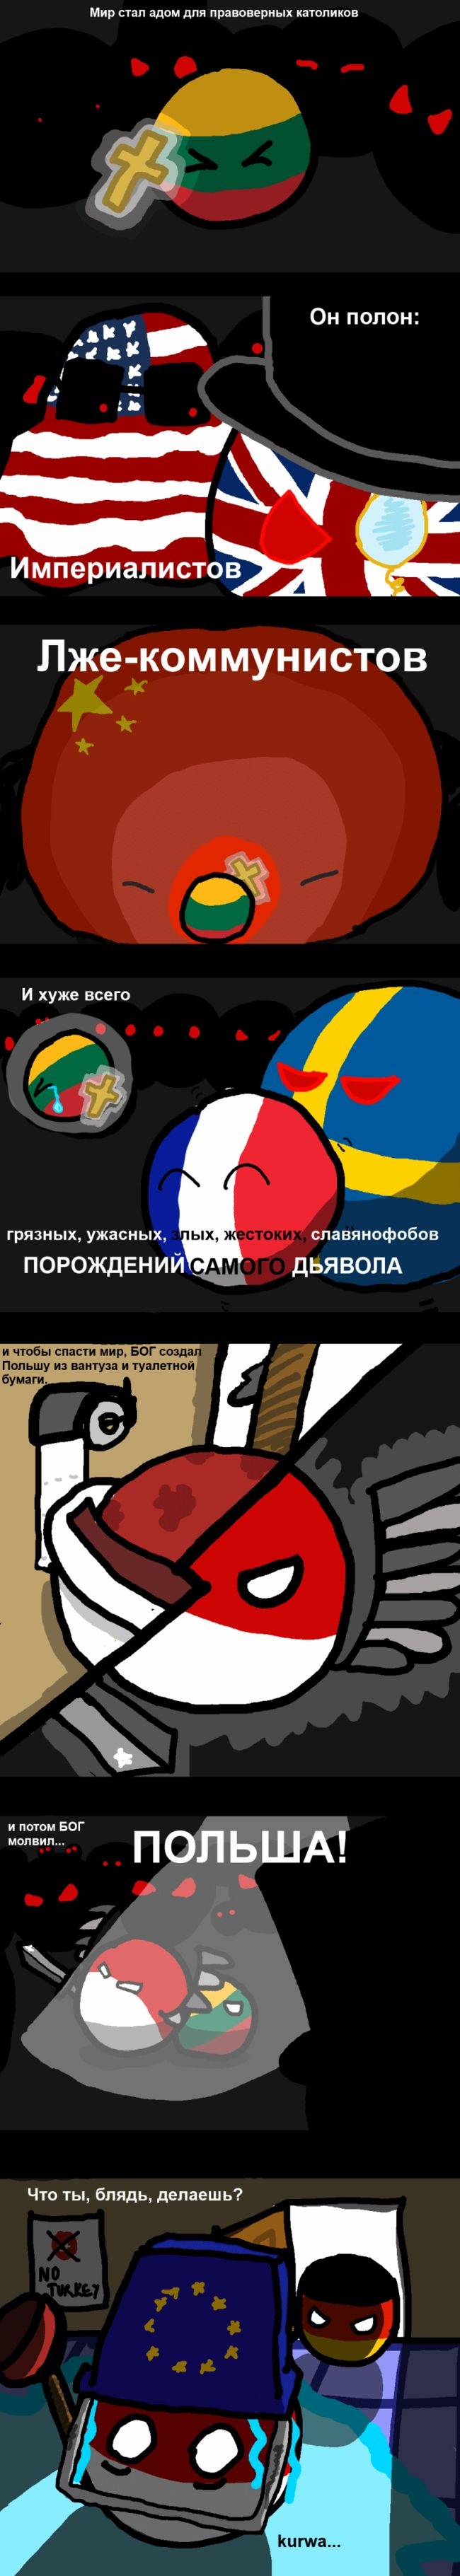 Смешные комиксы (20 картинок) 19.06.2014